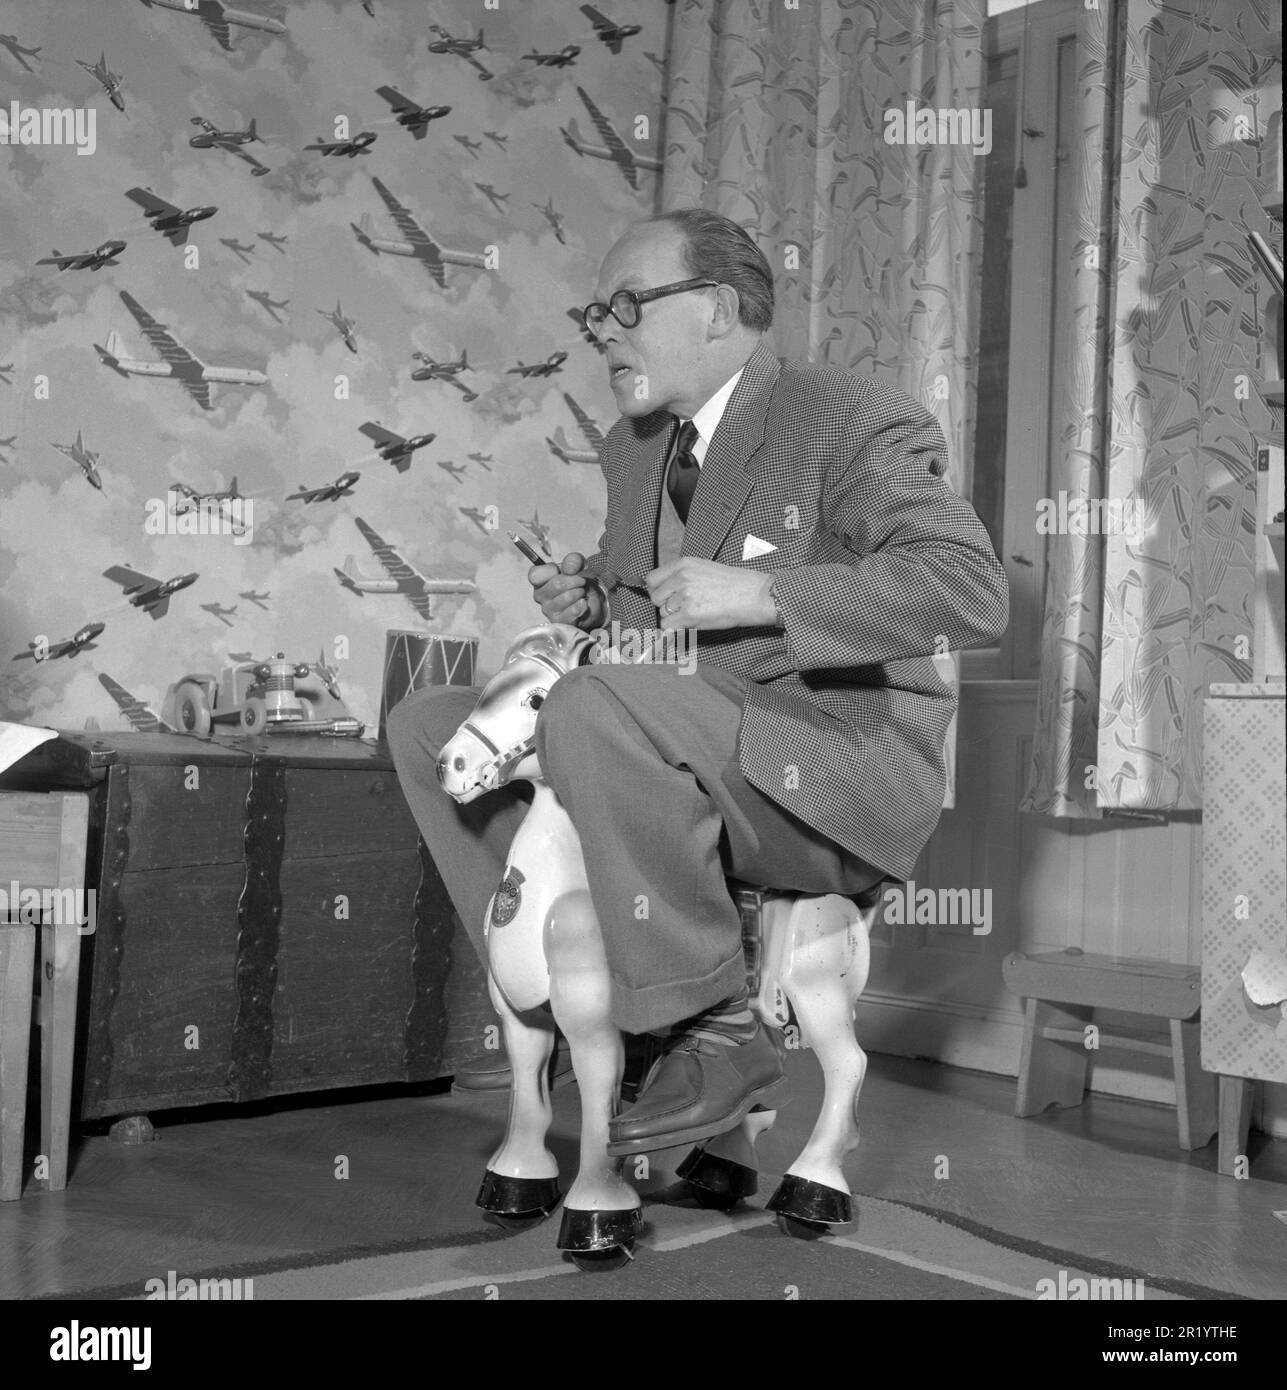 Amusez-vous dans le 1950s. Un homme joue seul sur un cheval jouet pour enfants. Il est écrivain et journaliste Olle Carle, 1909-1998. Suède 1953. Conard réf. 2376 Banque D'Images